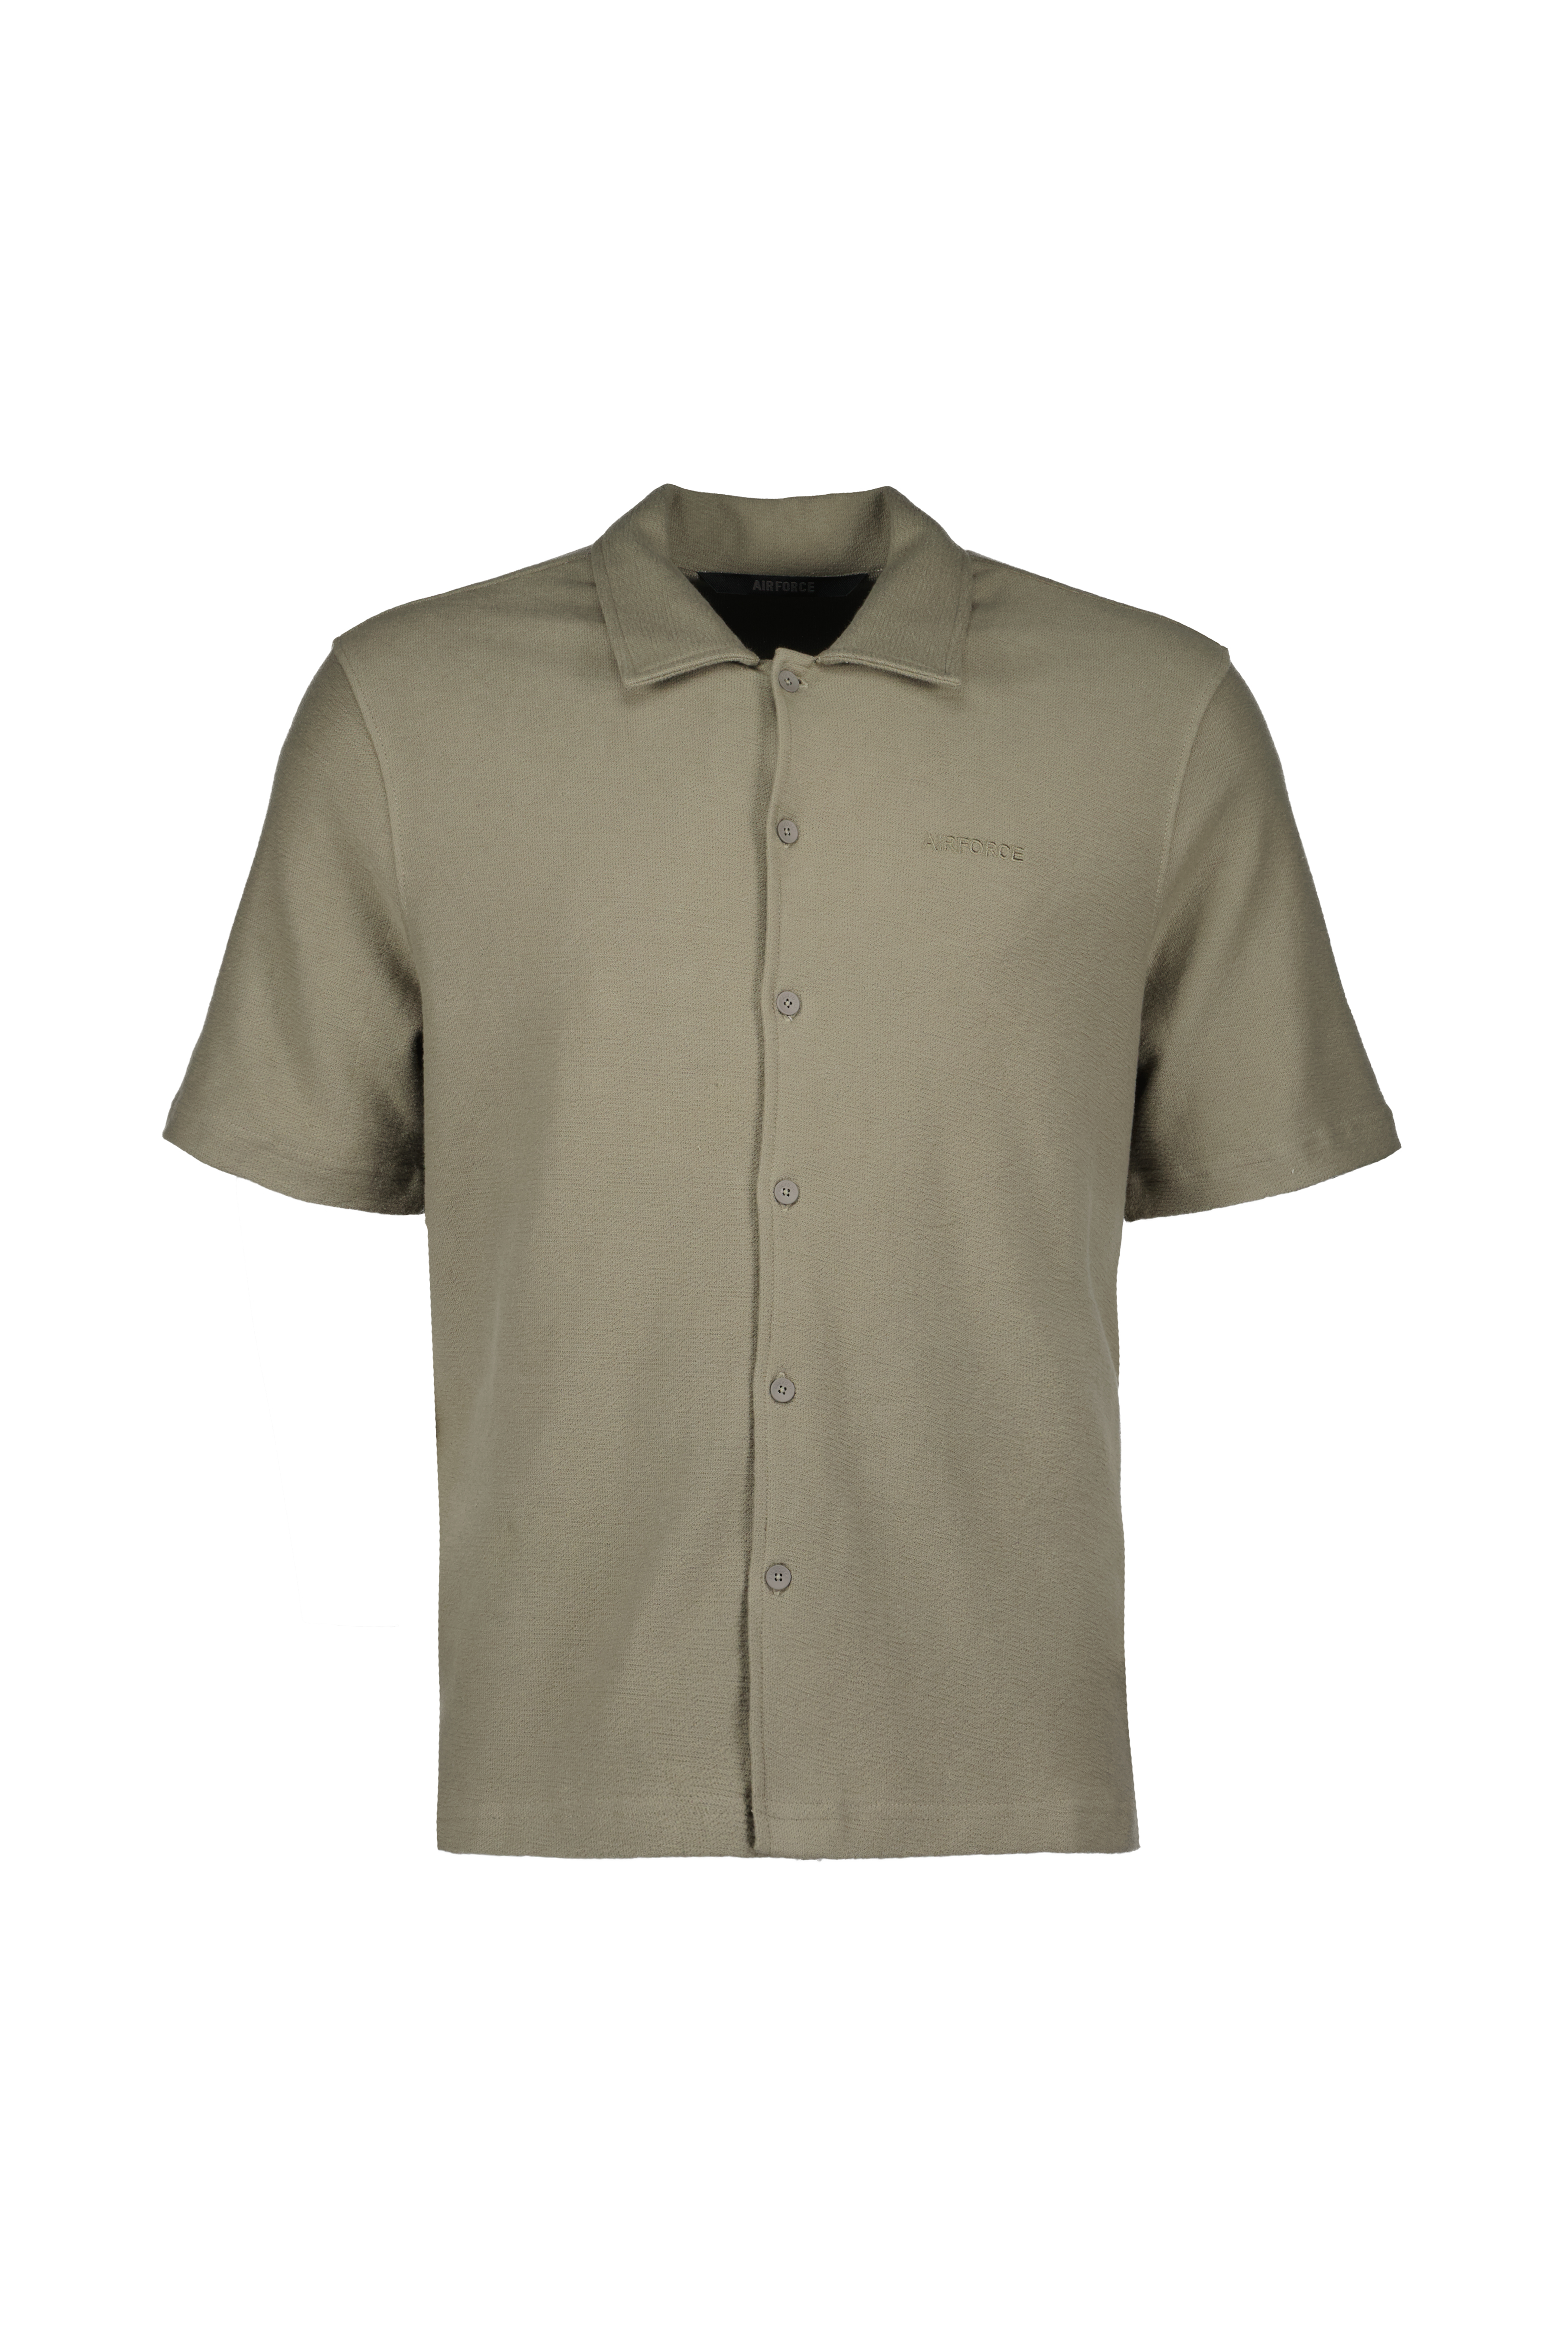 Airforce Mens Woven Short Sleeve Shirt 2024